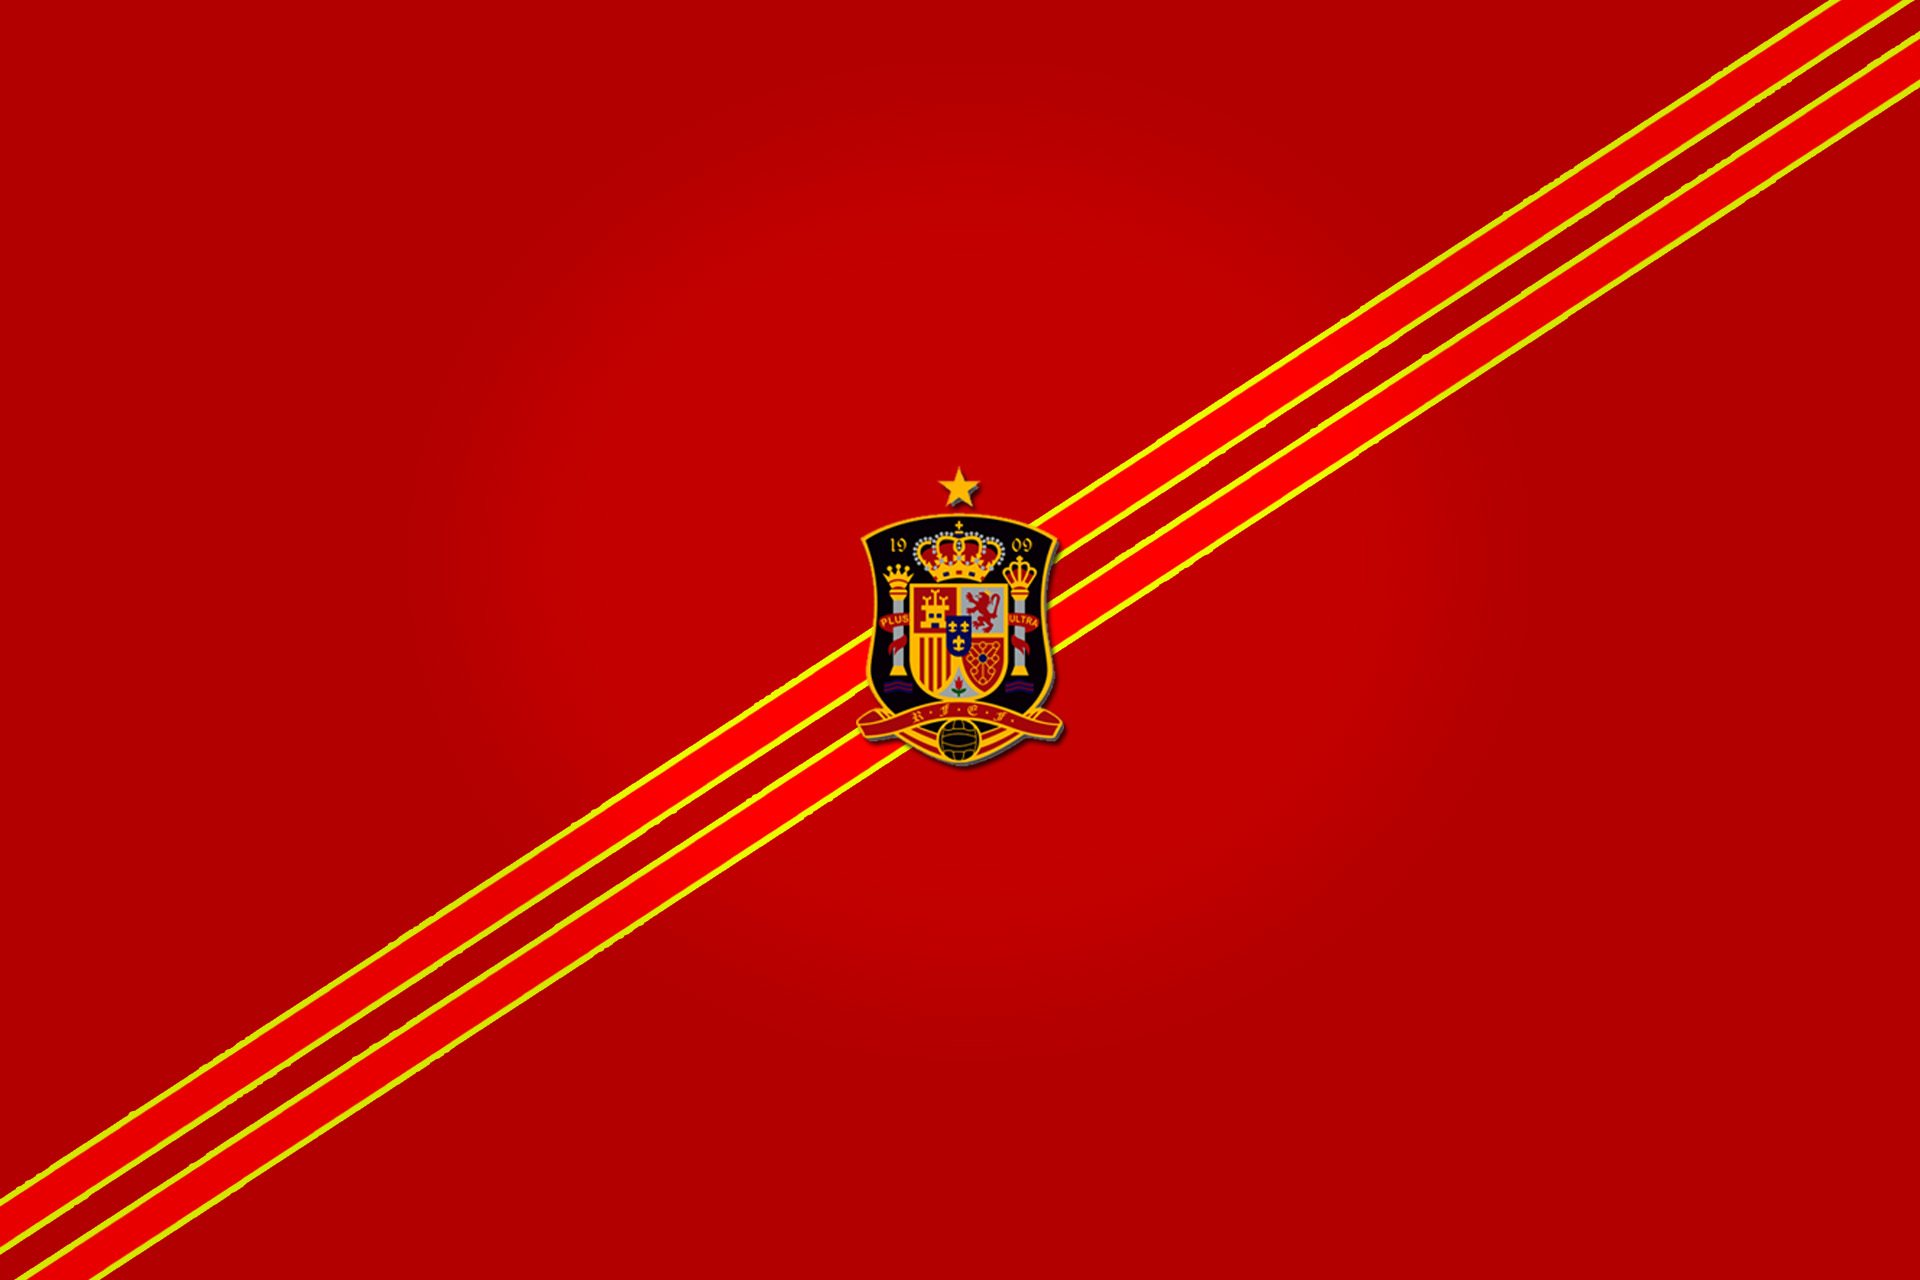 сборная испании по футболу испанская команда для футбола испания футбол эмблема фурия роха ла красная фурия фон